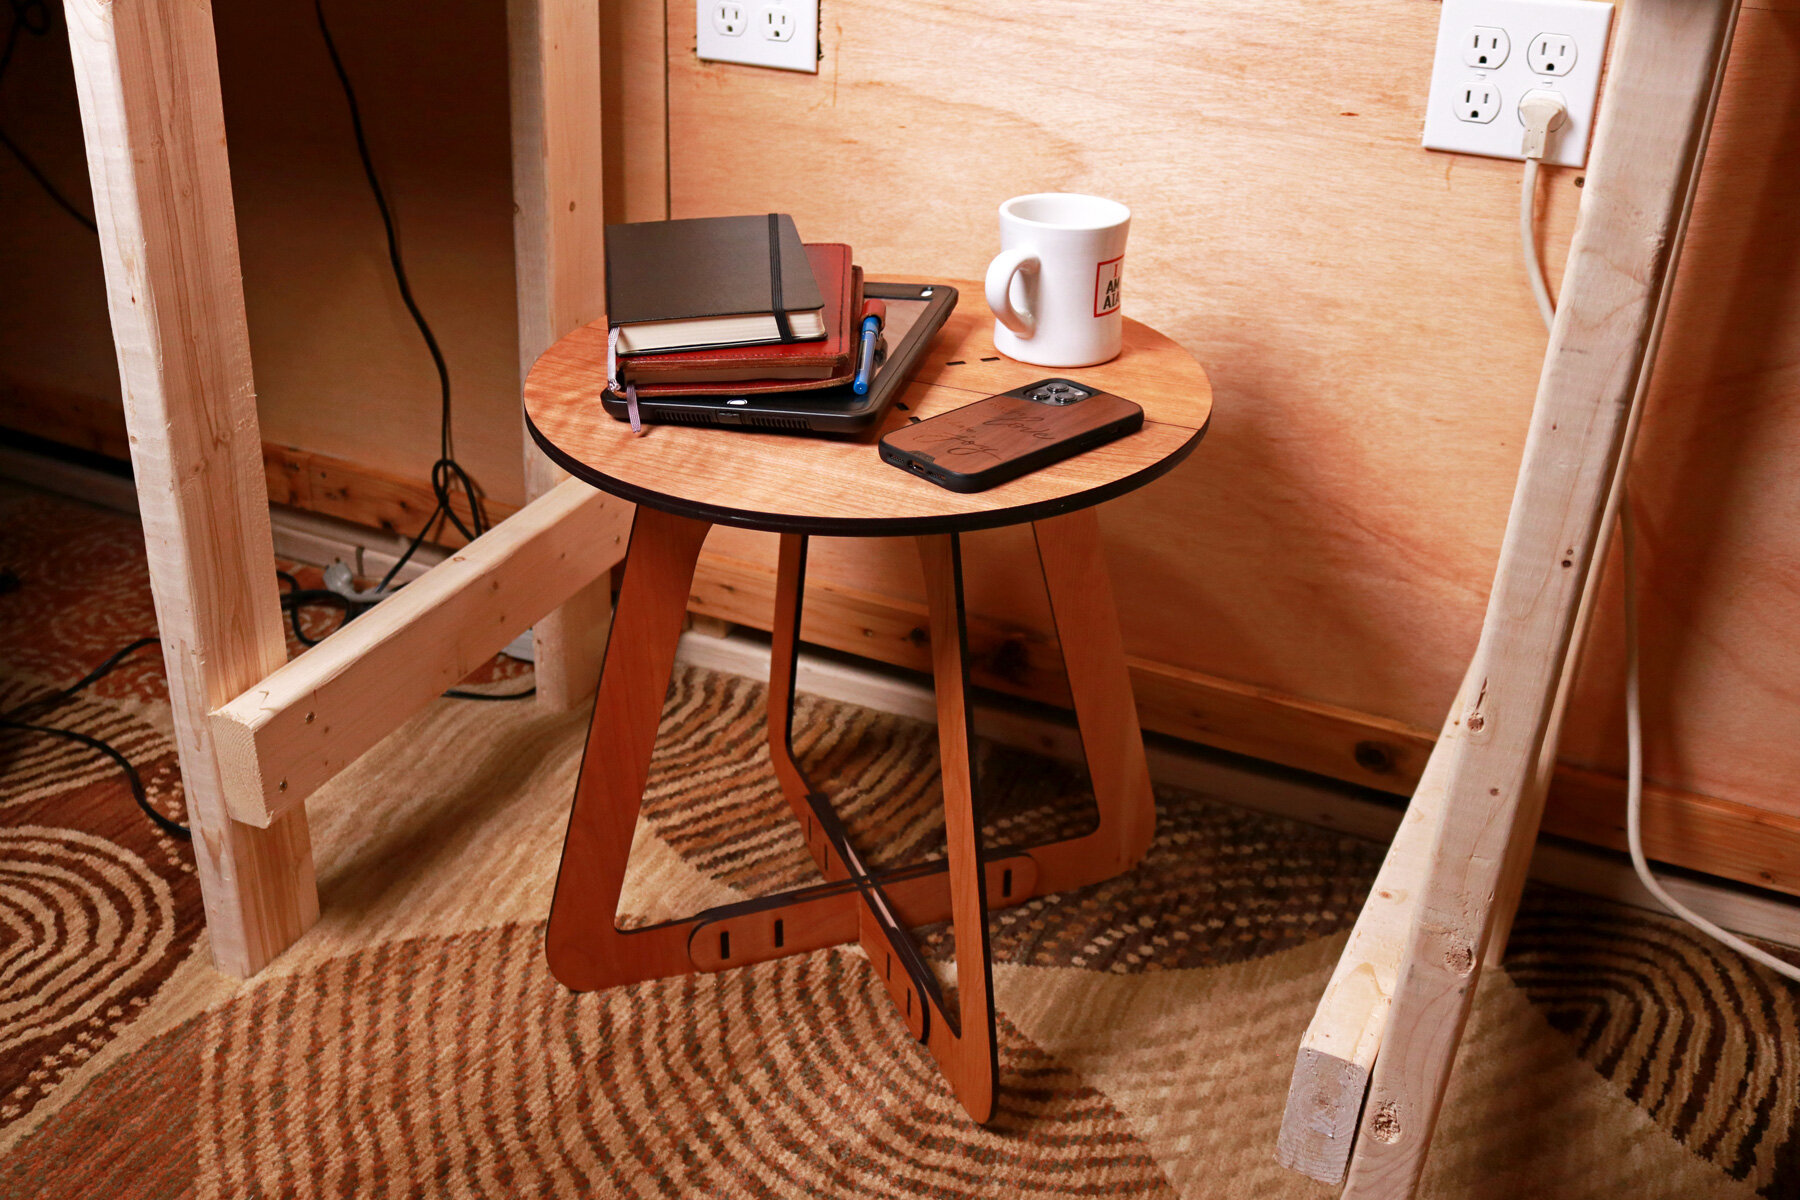 043_Minimal-Wood-Stool-and-Side-Table-03.jpg